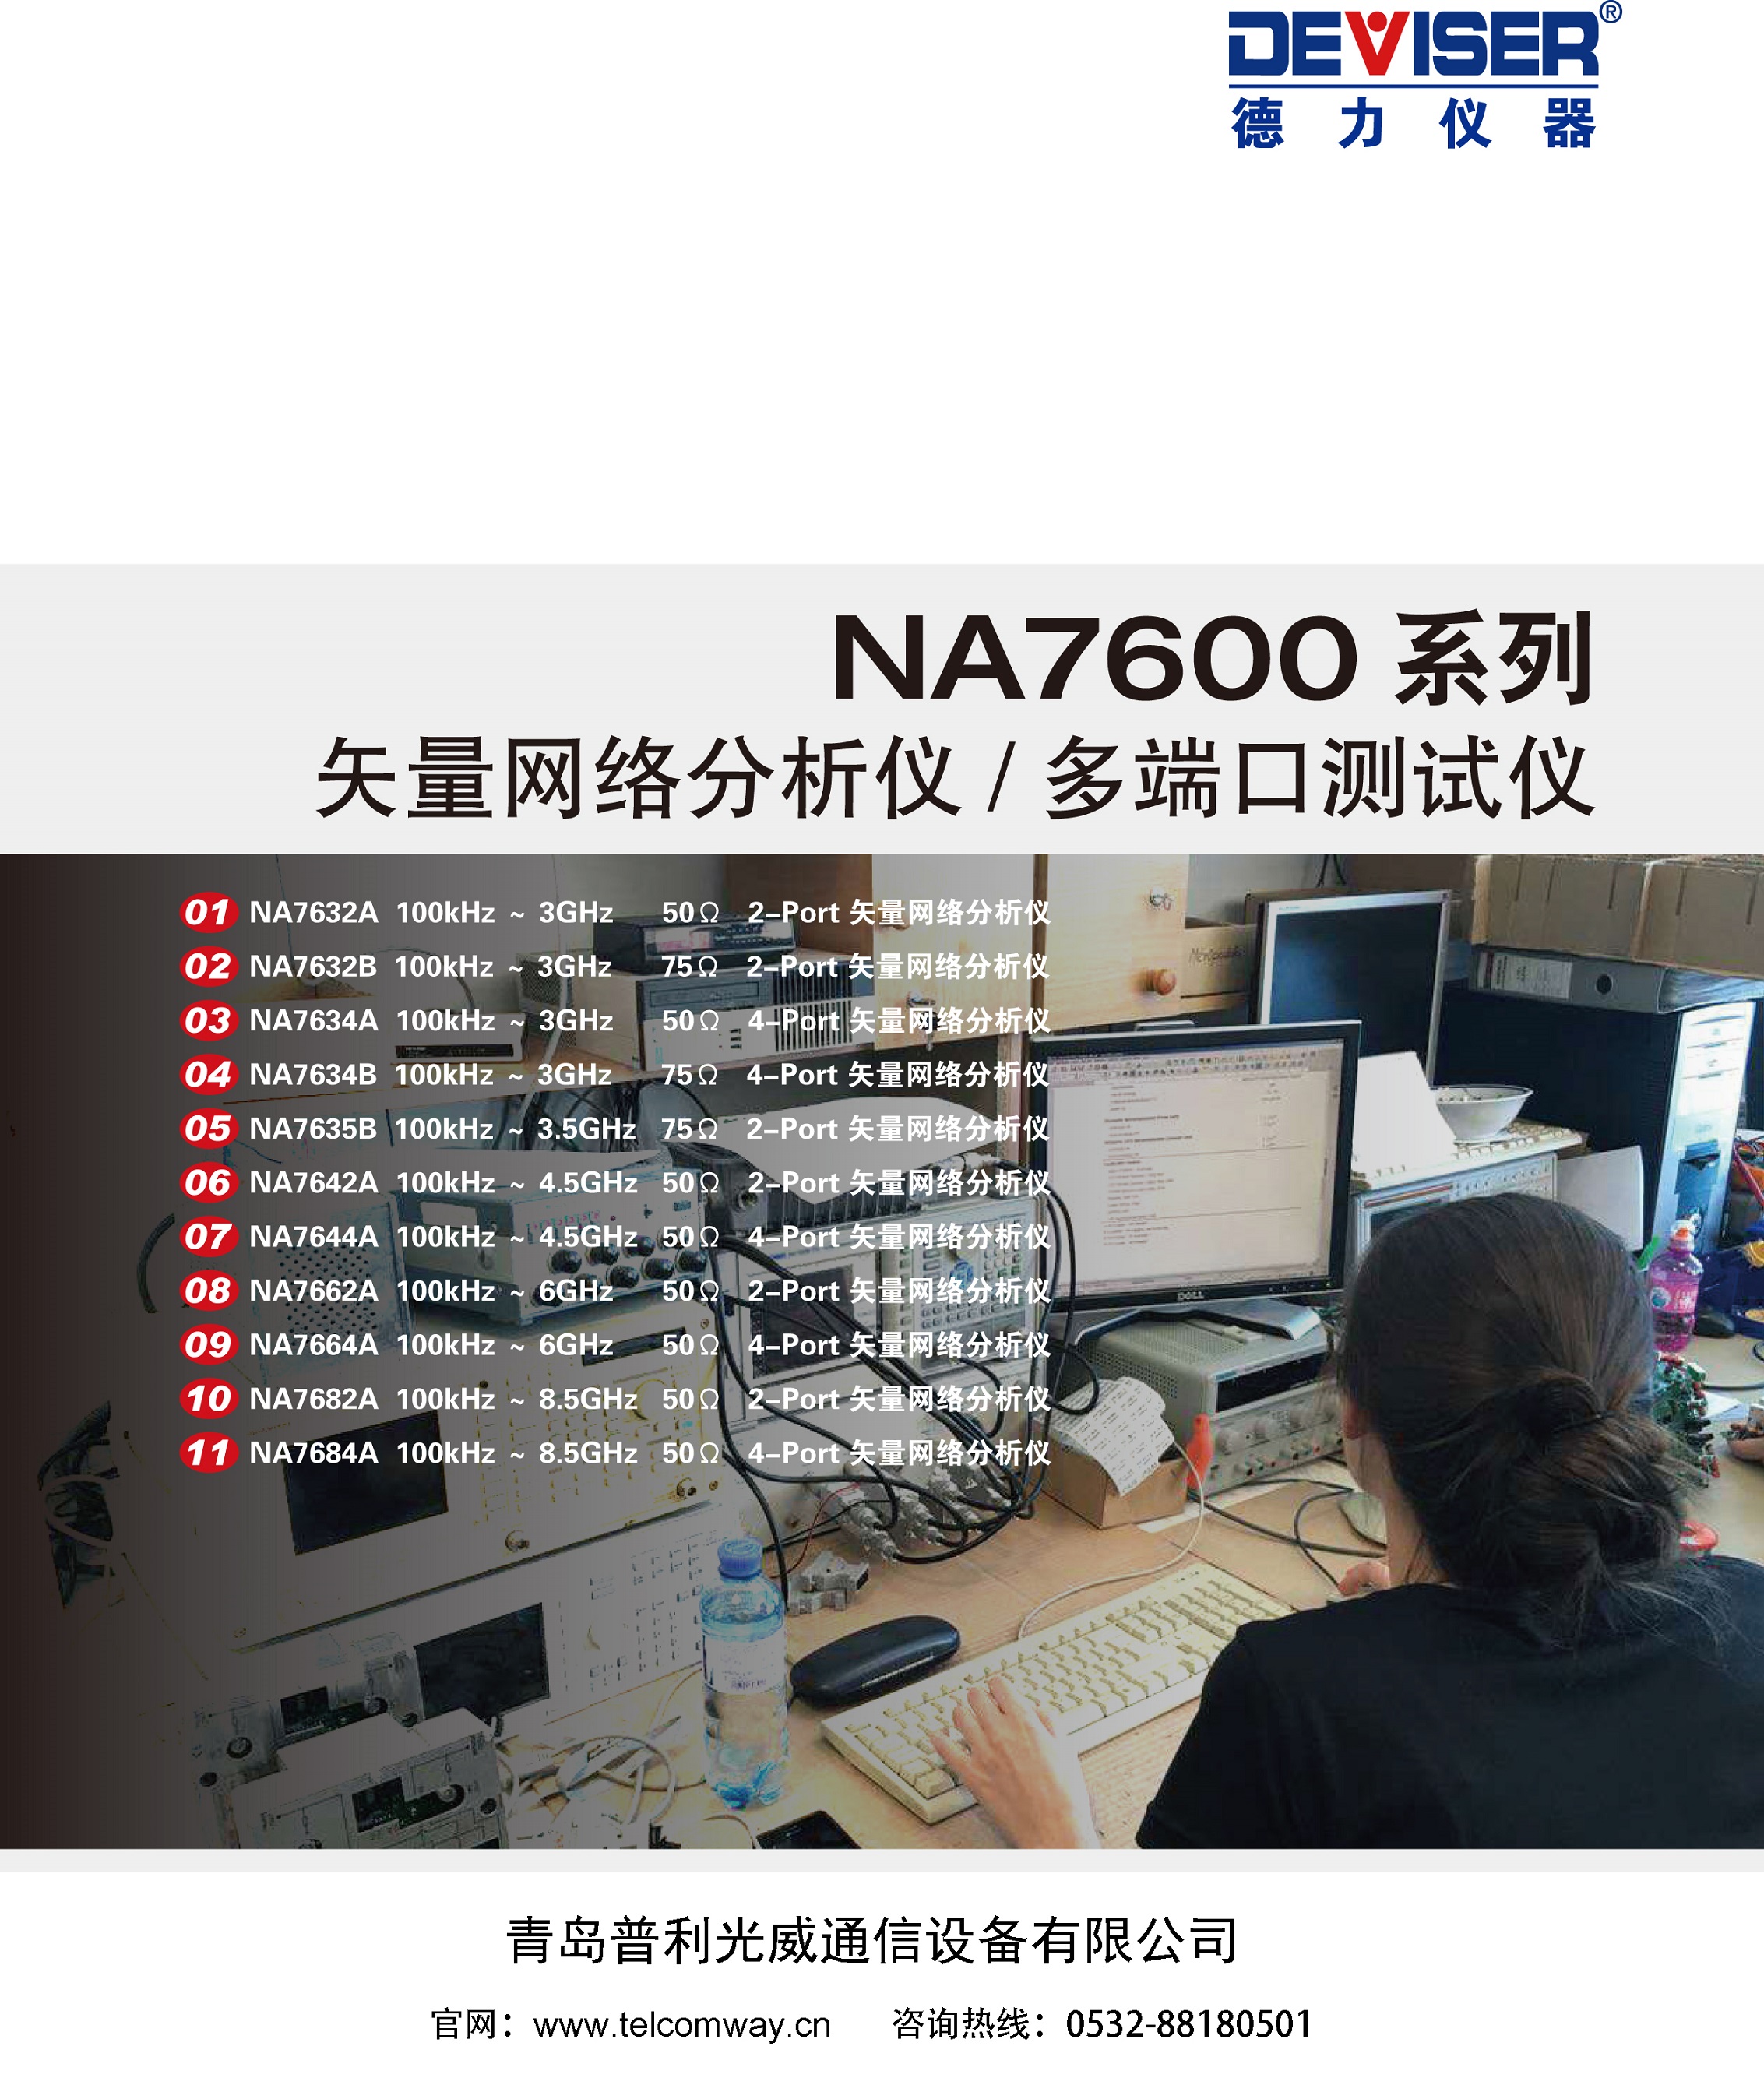 2018030_NA7600系列-1 - 副本.jpg